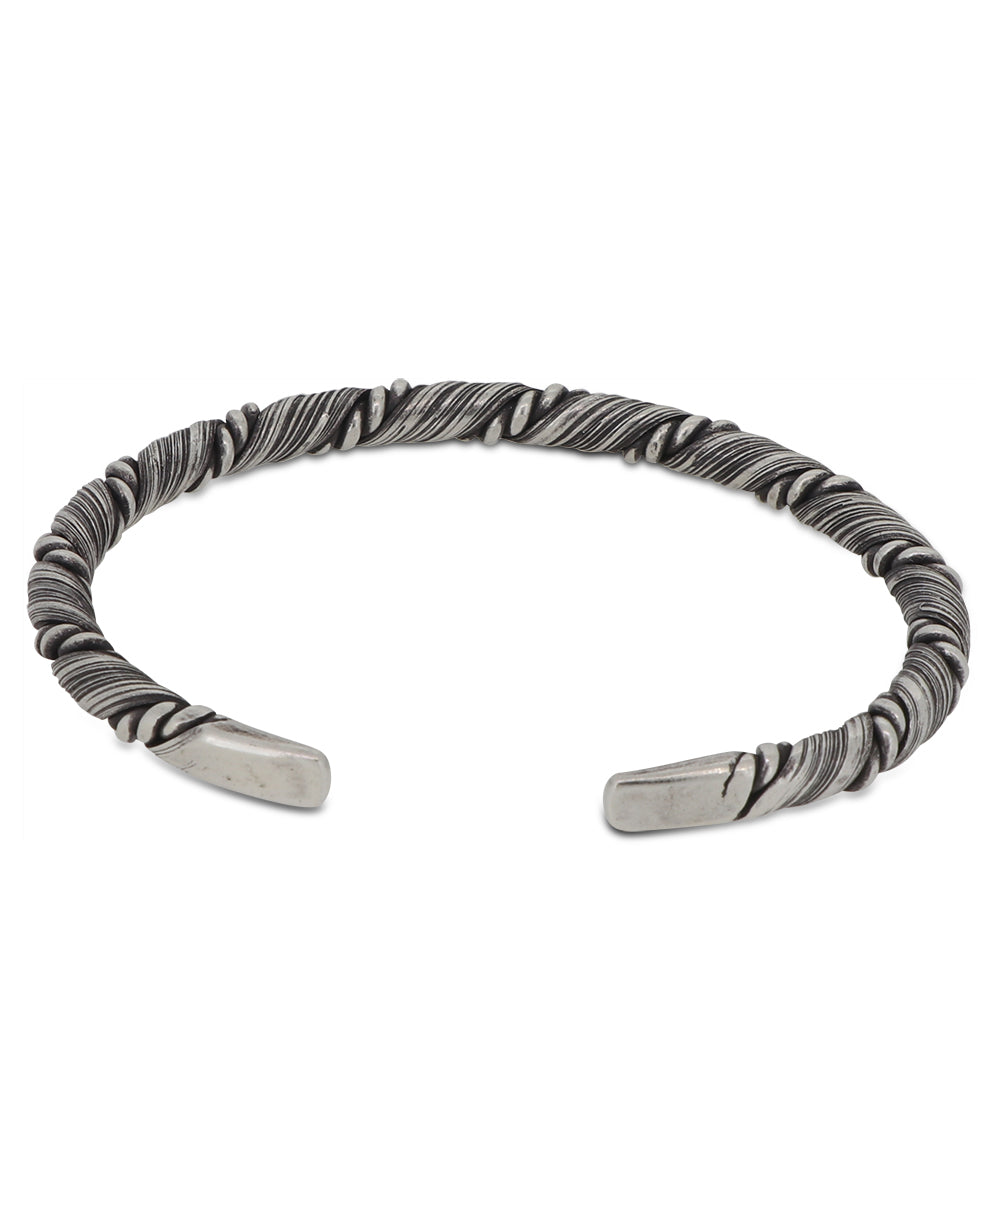 Hilltribe silver bracelet